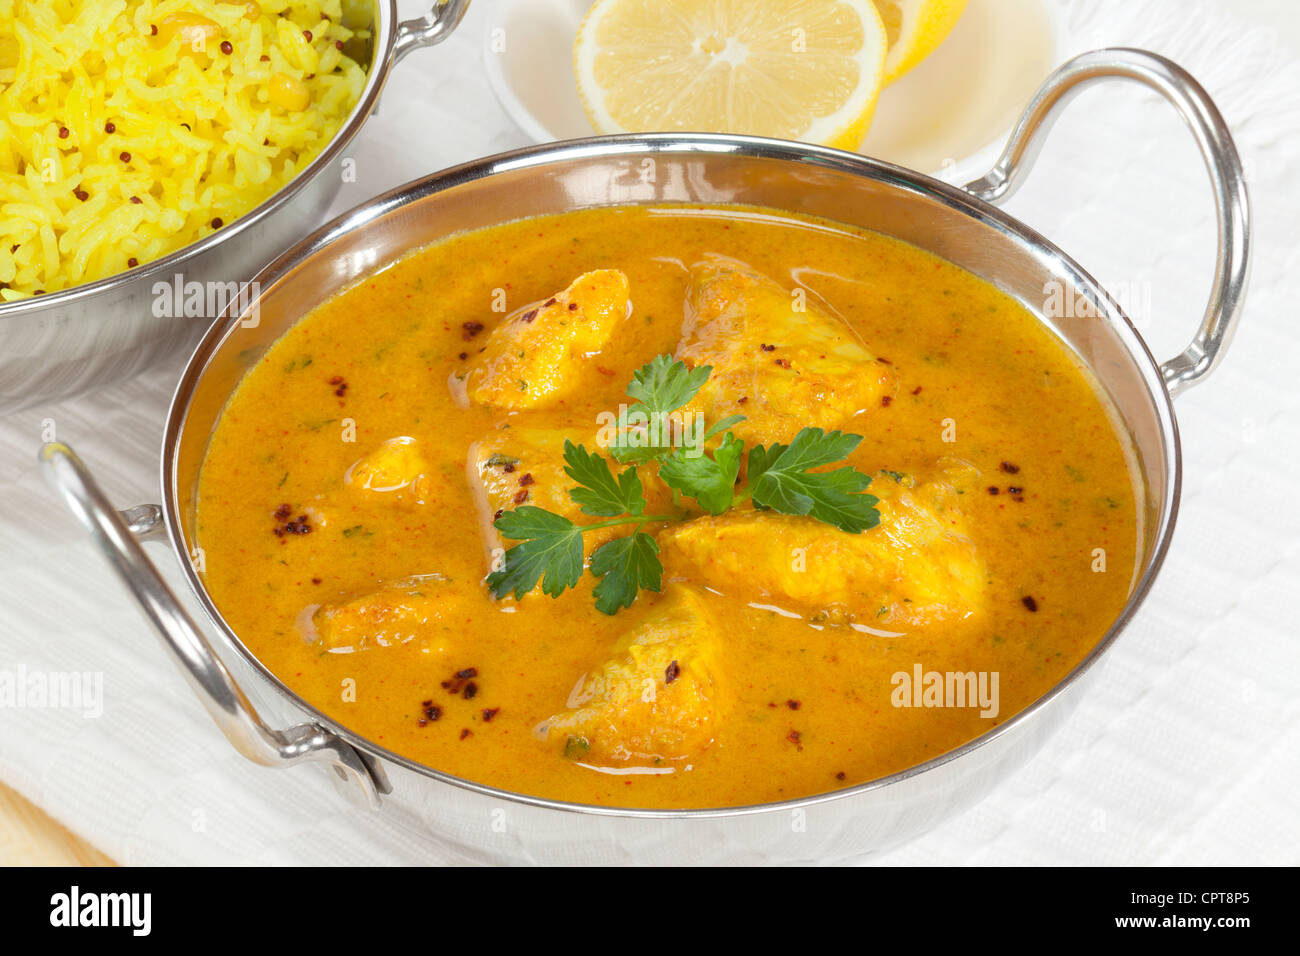 Balti un plat avec un style Peshwari poulet au curry, avec du riz basmati et du citron à l'arrière-plan. Banque D'Images